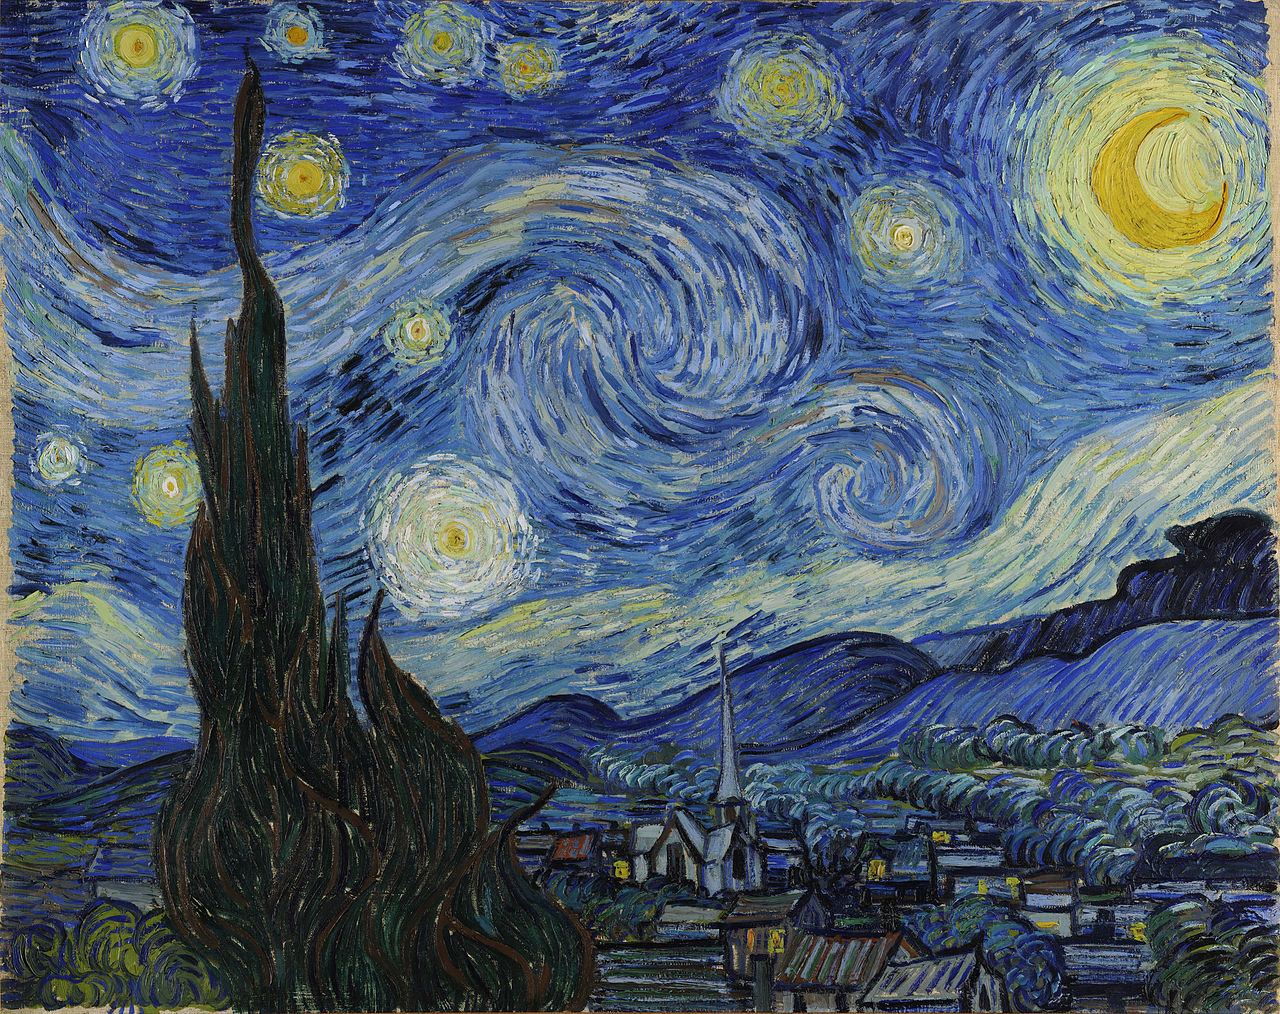 Hvězdná noc by Vincent van Gogh - 1889 - 73,7 × 92,1 cm 